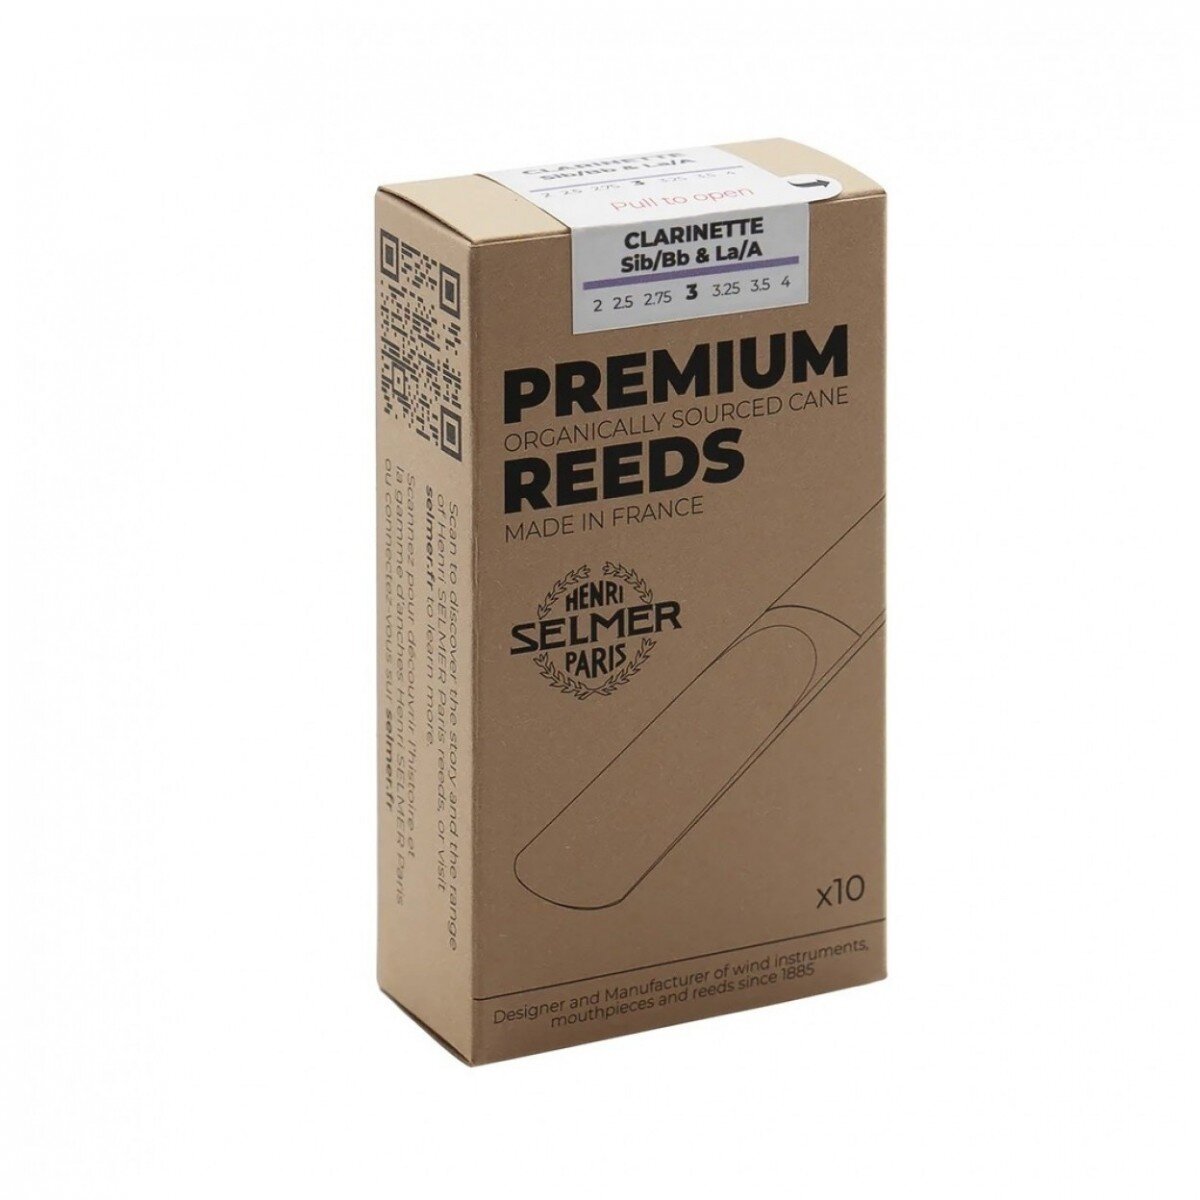 Selmer Clarinet Premium 3 : photo 1